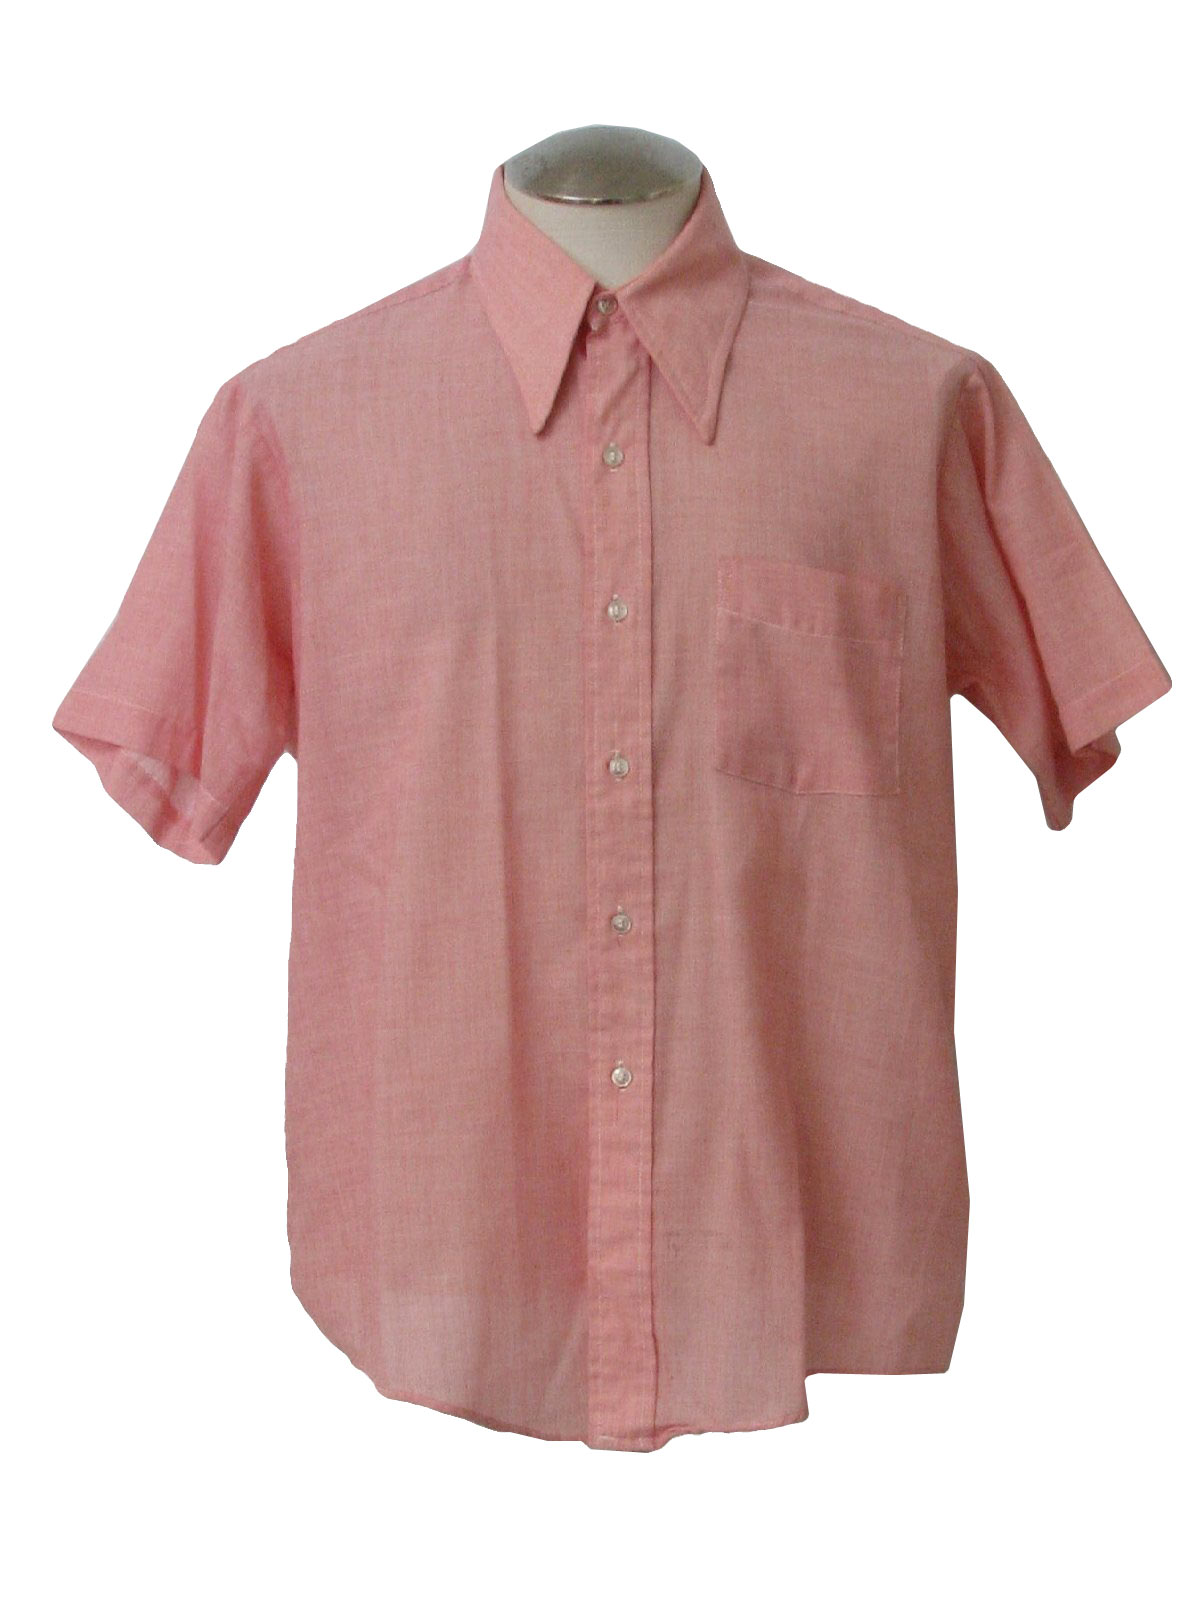 Retro 1970's Shirt (Size Label) : 70s -Size Label- Mens blended cotton ...